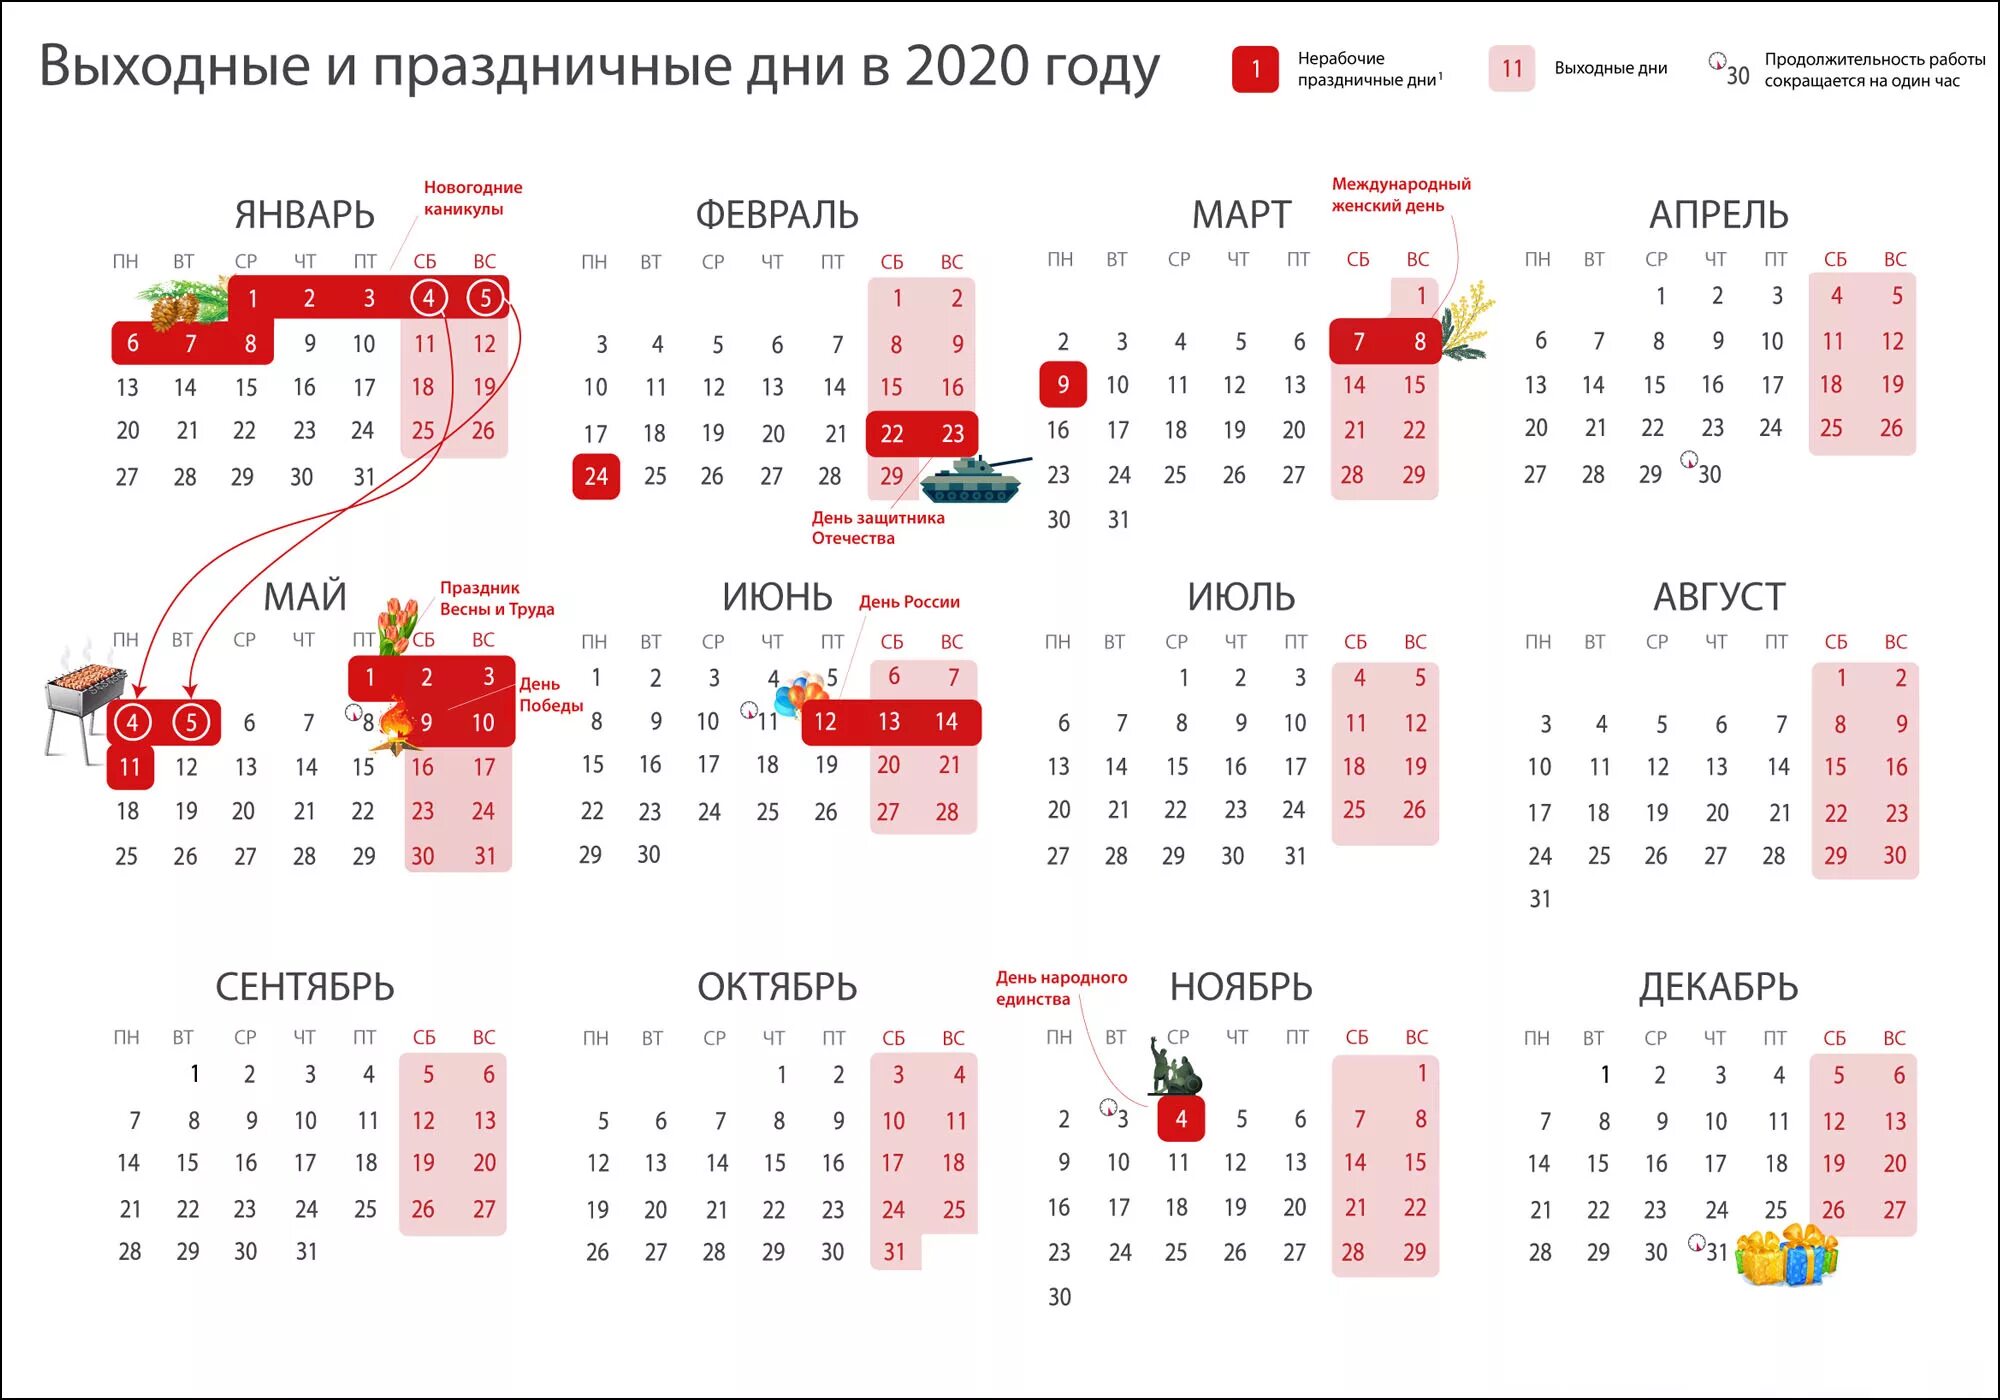 Праздники и выходные дни в 2020 году. Календарь рабочих дней 2020 год. Выходные и праздничные дни в 2020 году в России календарь. Календарь 2020 года производственный праздничными днями и выходными.